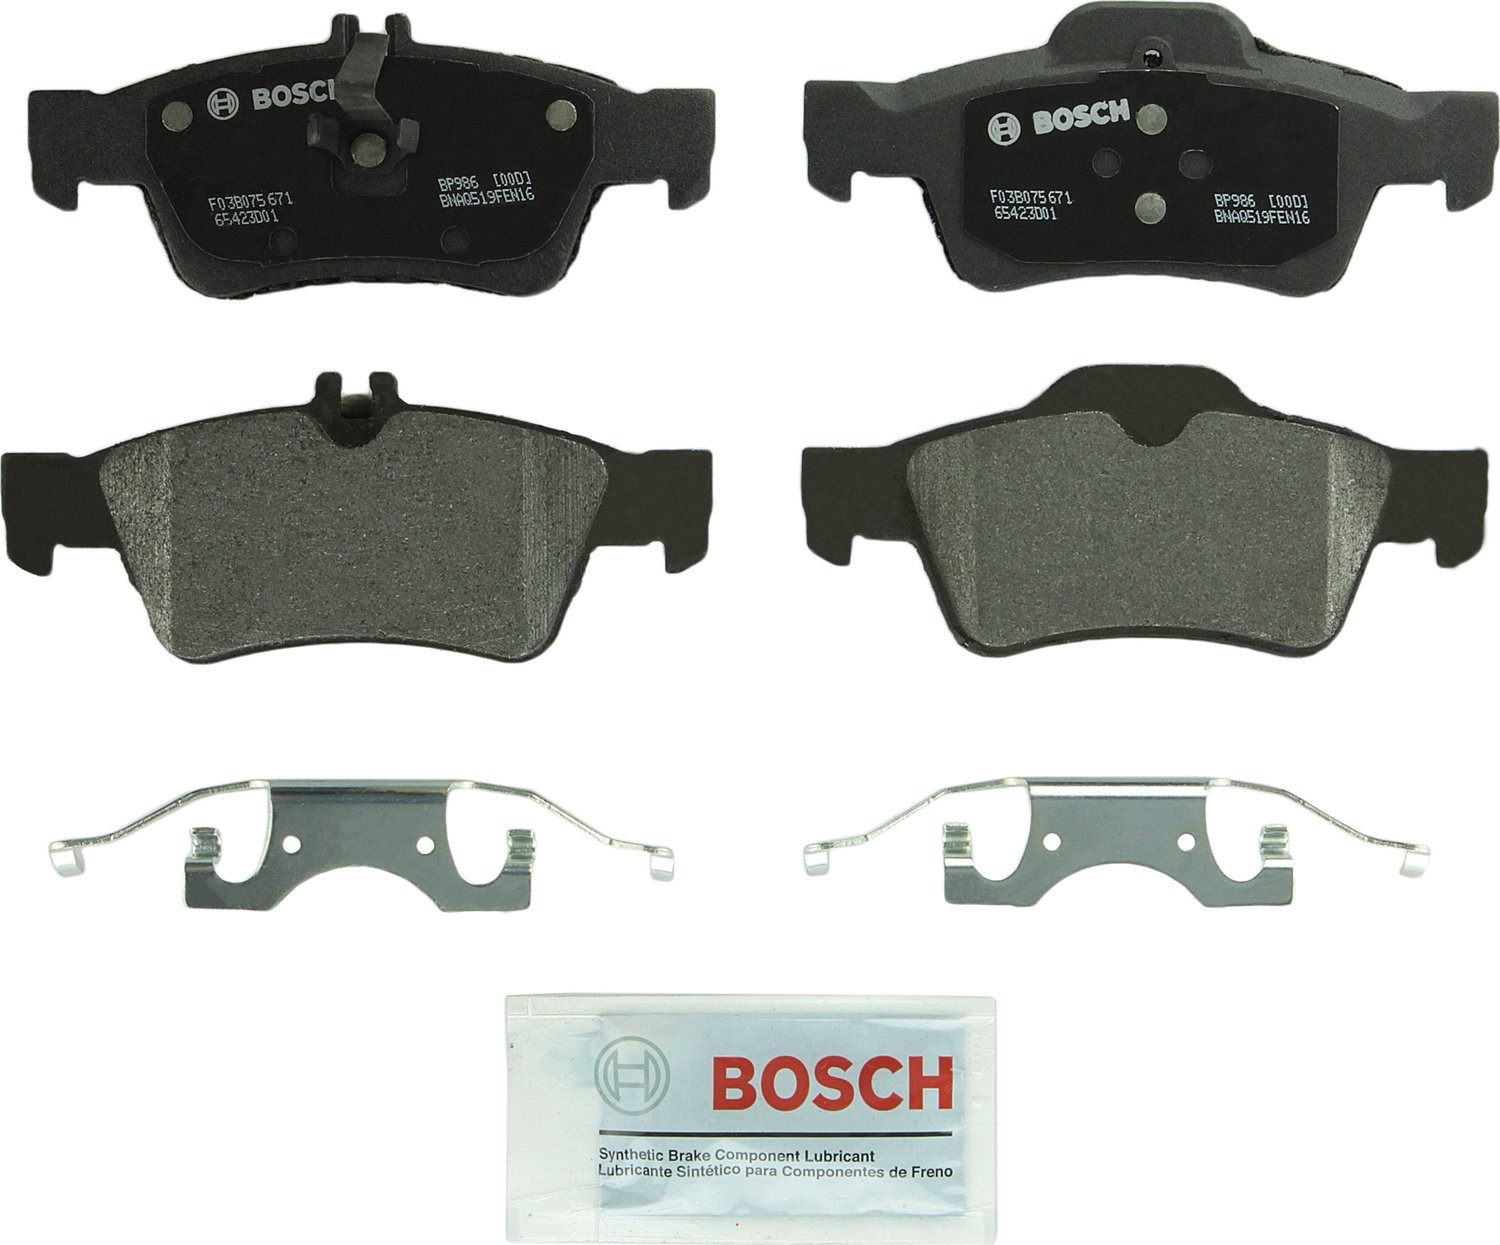  Bosch BP986 QuietCast プレミアム セミメタリック ディスク ブレーキ パッド セット - 一部のメルセデスベンツ (CL、CLS、E、S、SL) 320、350、400、430、500、550...